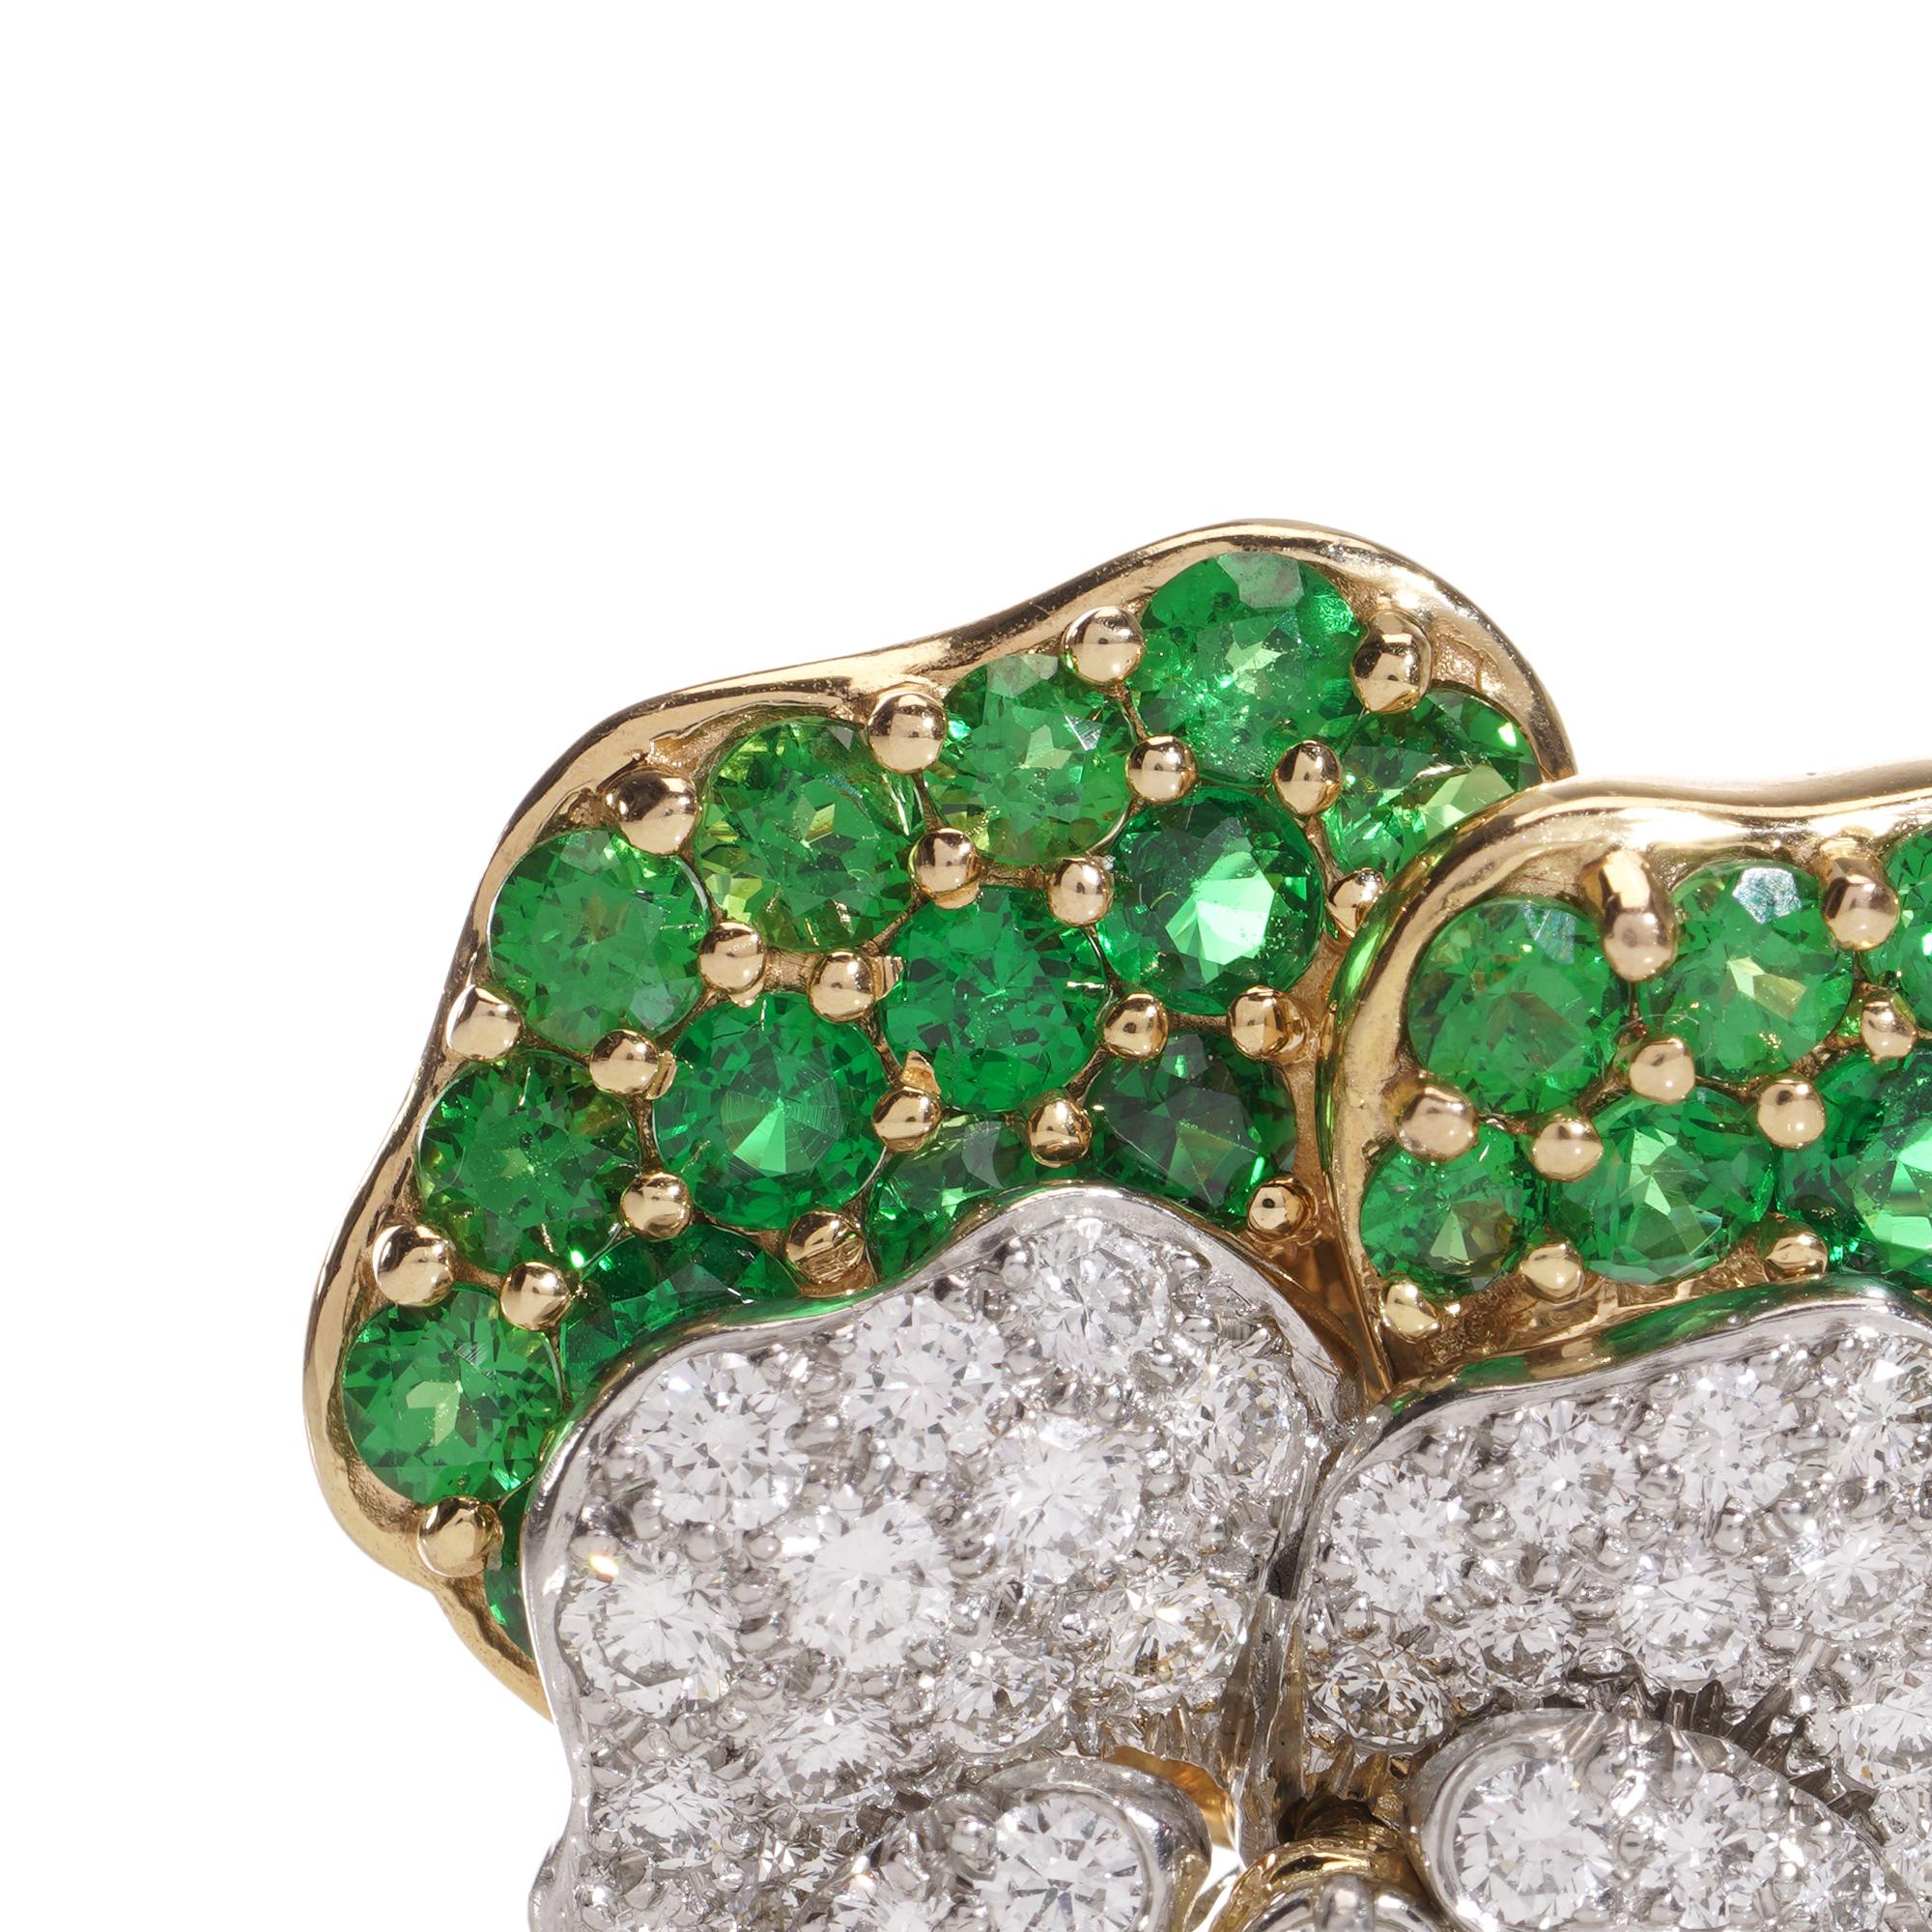 Adoptez l'élégance intemporelle avec ce modèle vintage de Tiffany & Co. Broche Pansy.
Fabriqué vers 1960.
Réalisée en or jaune 18kt et en platine, elle est ornée de grenats tsavorites taille brillant, de diamants et de saphirs.

Signé et numéroté